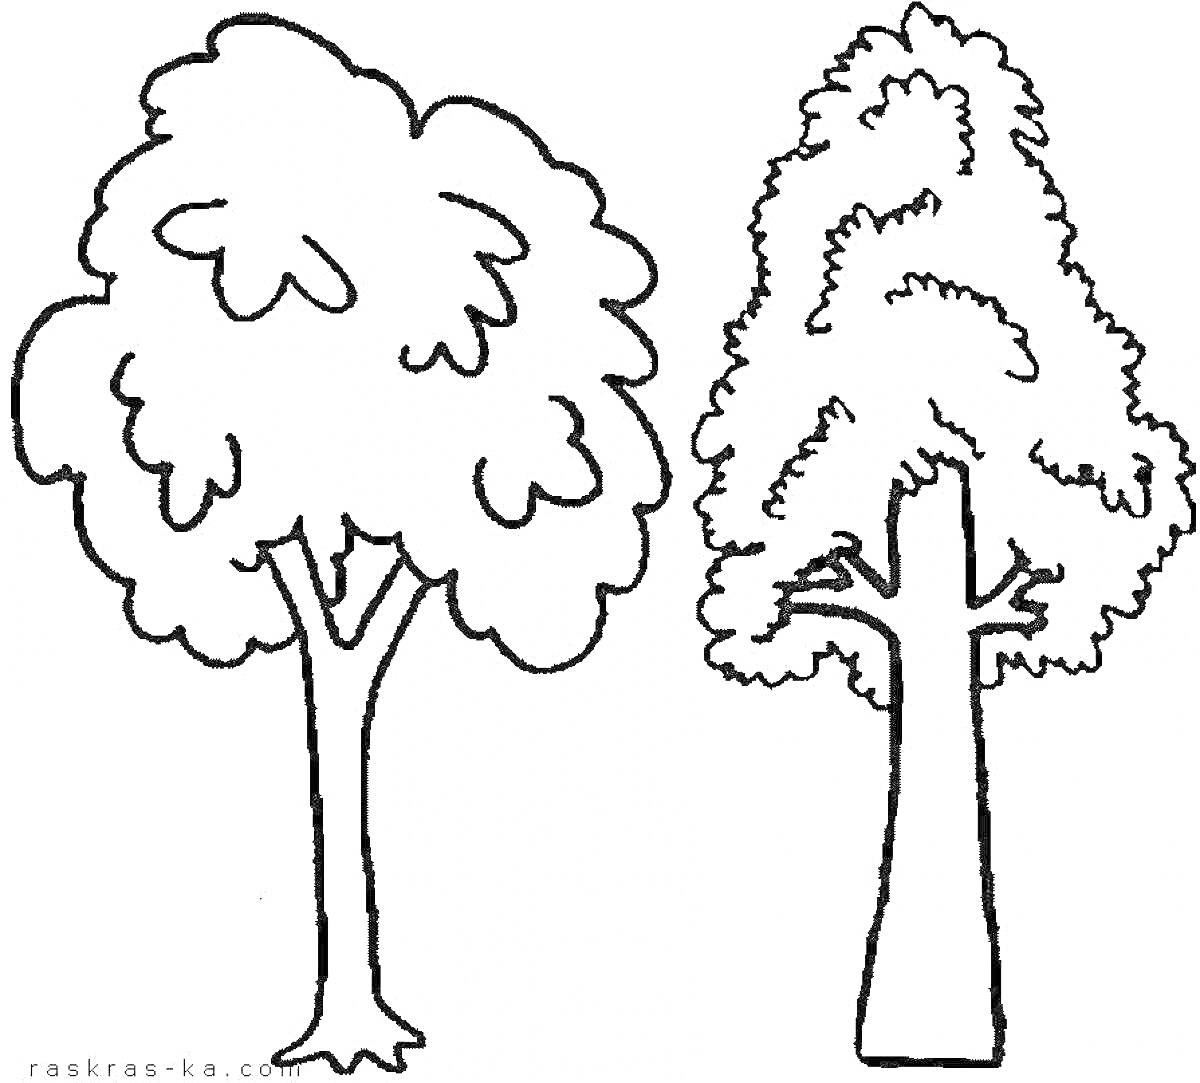 Раскраска Раскраска с двумя деревьями для детей, одно лохматое с закругленной кроной, другое стройное с остроконечной кроной